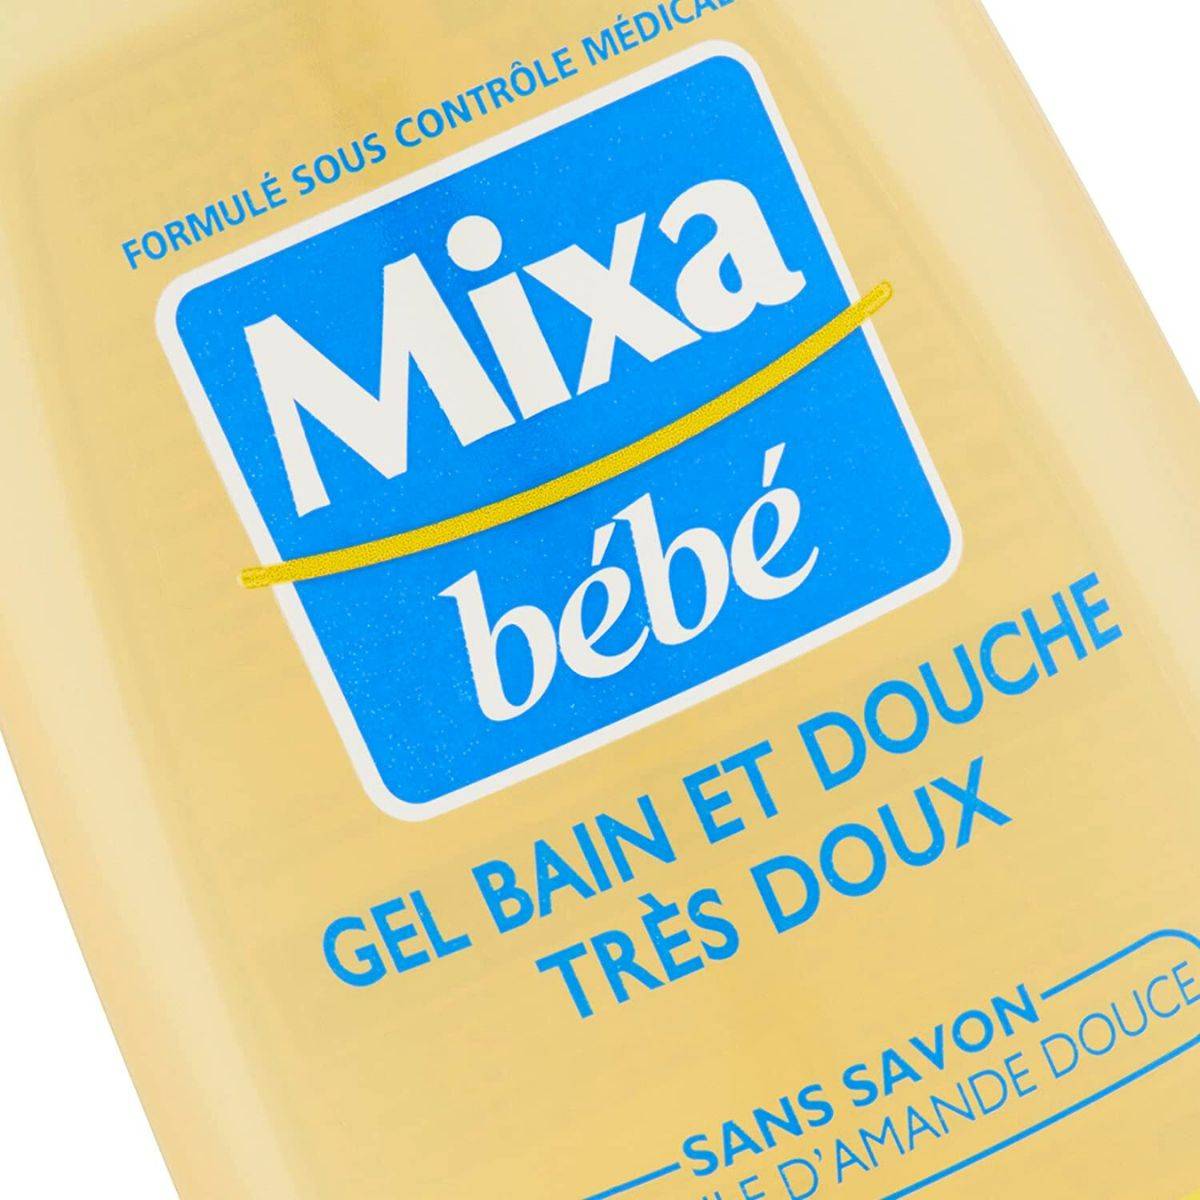 Gel Bain et Douche Très Doux - Mixa - Bébé - Index des produits cosmétiques  - CosmeticOBS - L'Observatoire des Produits Cosmétiques